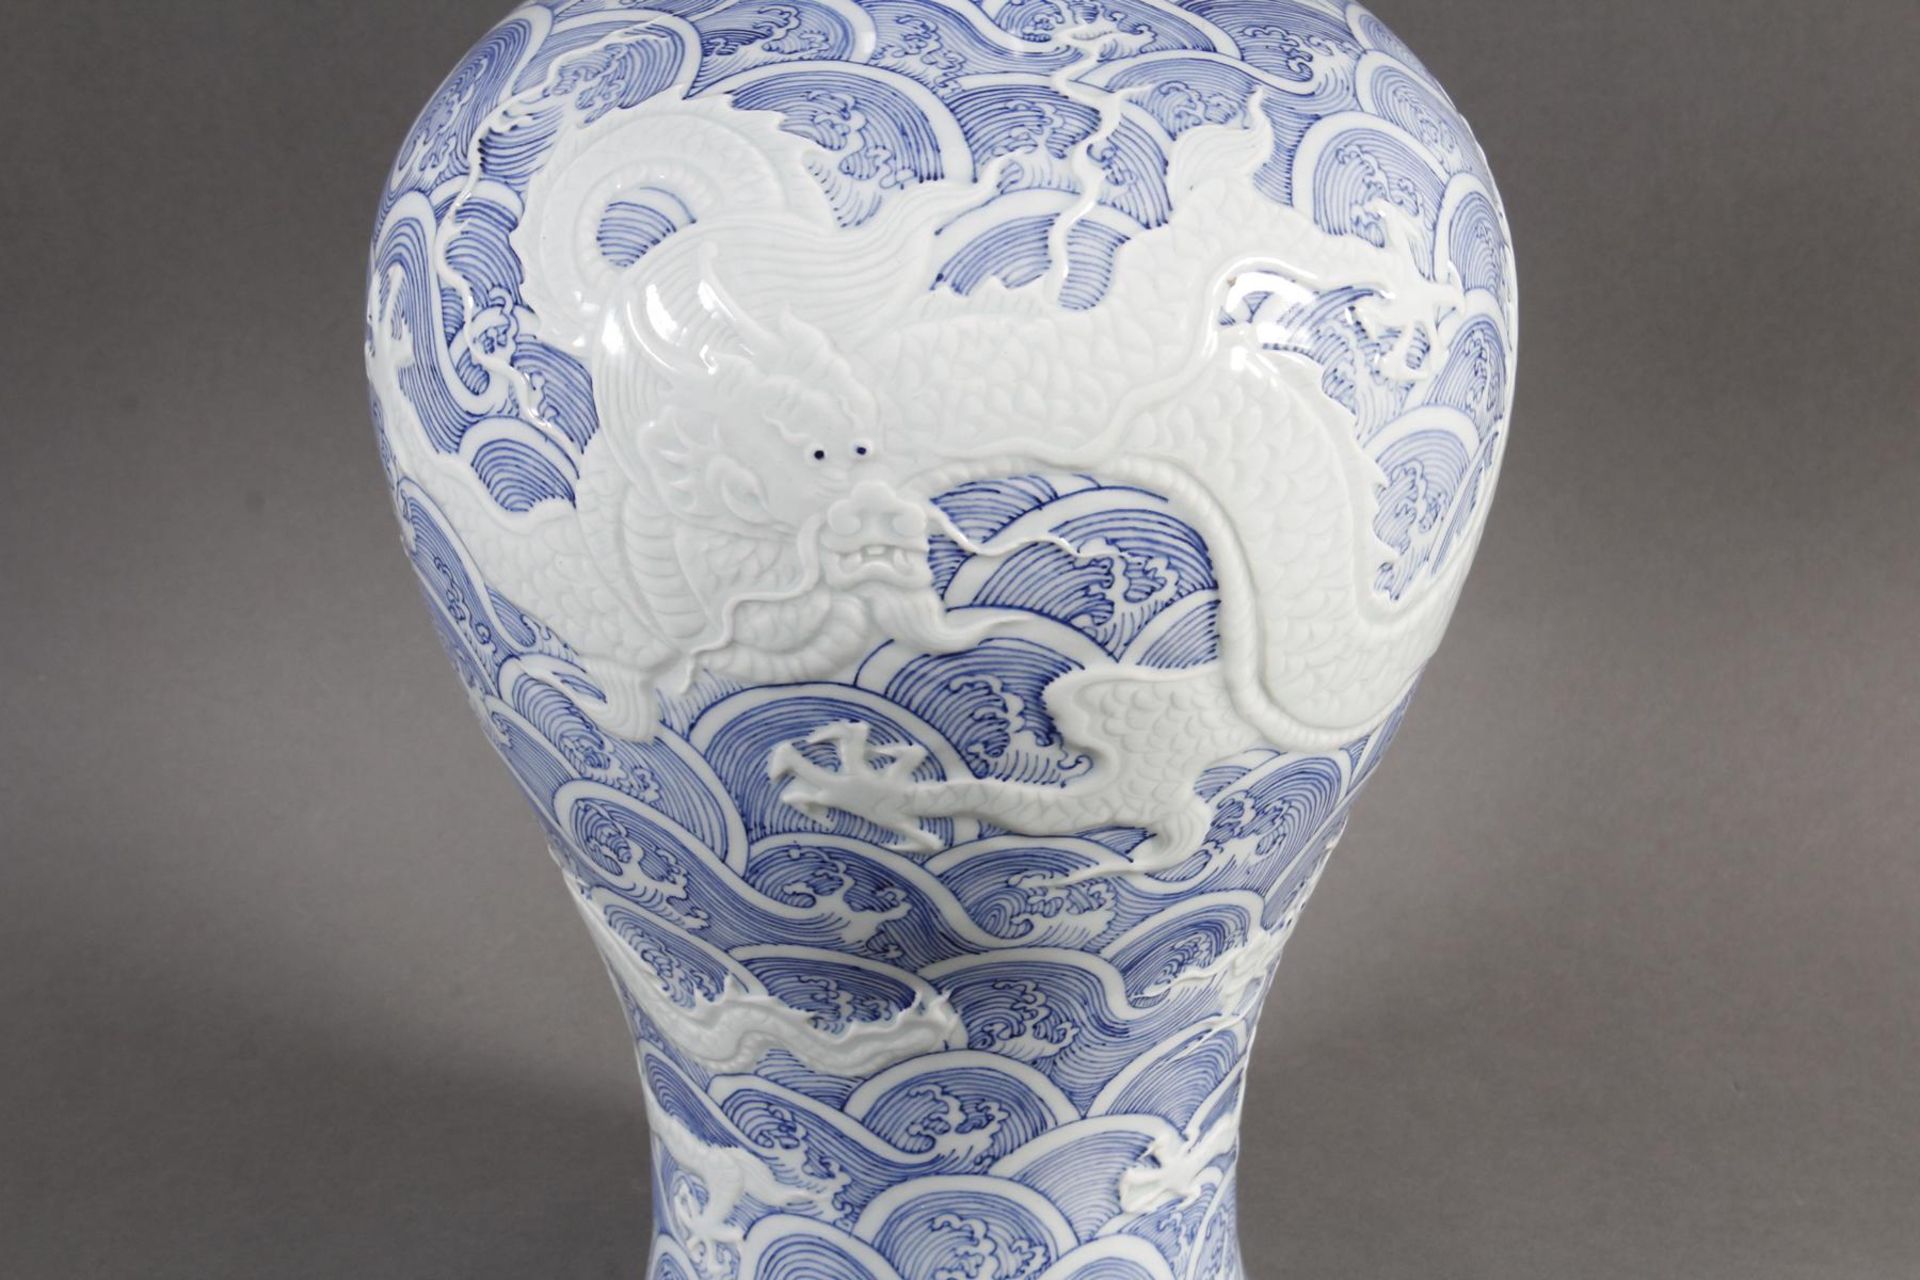 Blau-Weiße Porzellanvase in Mei Ping Form - Bild 2 aus 9